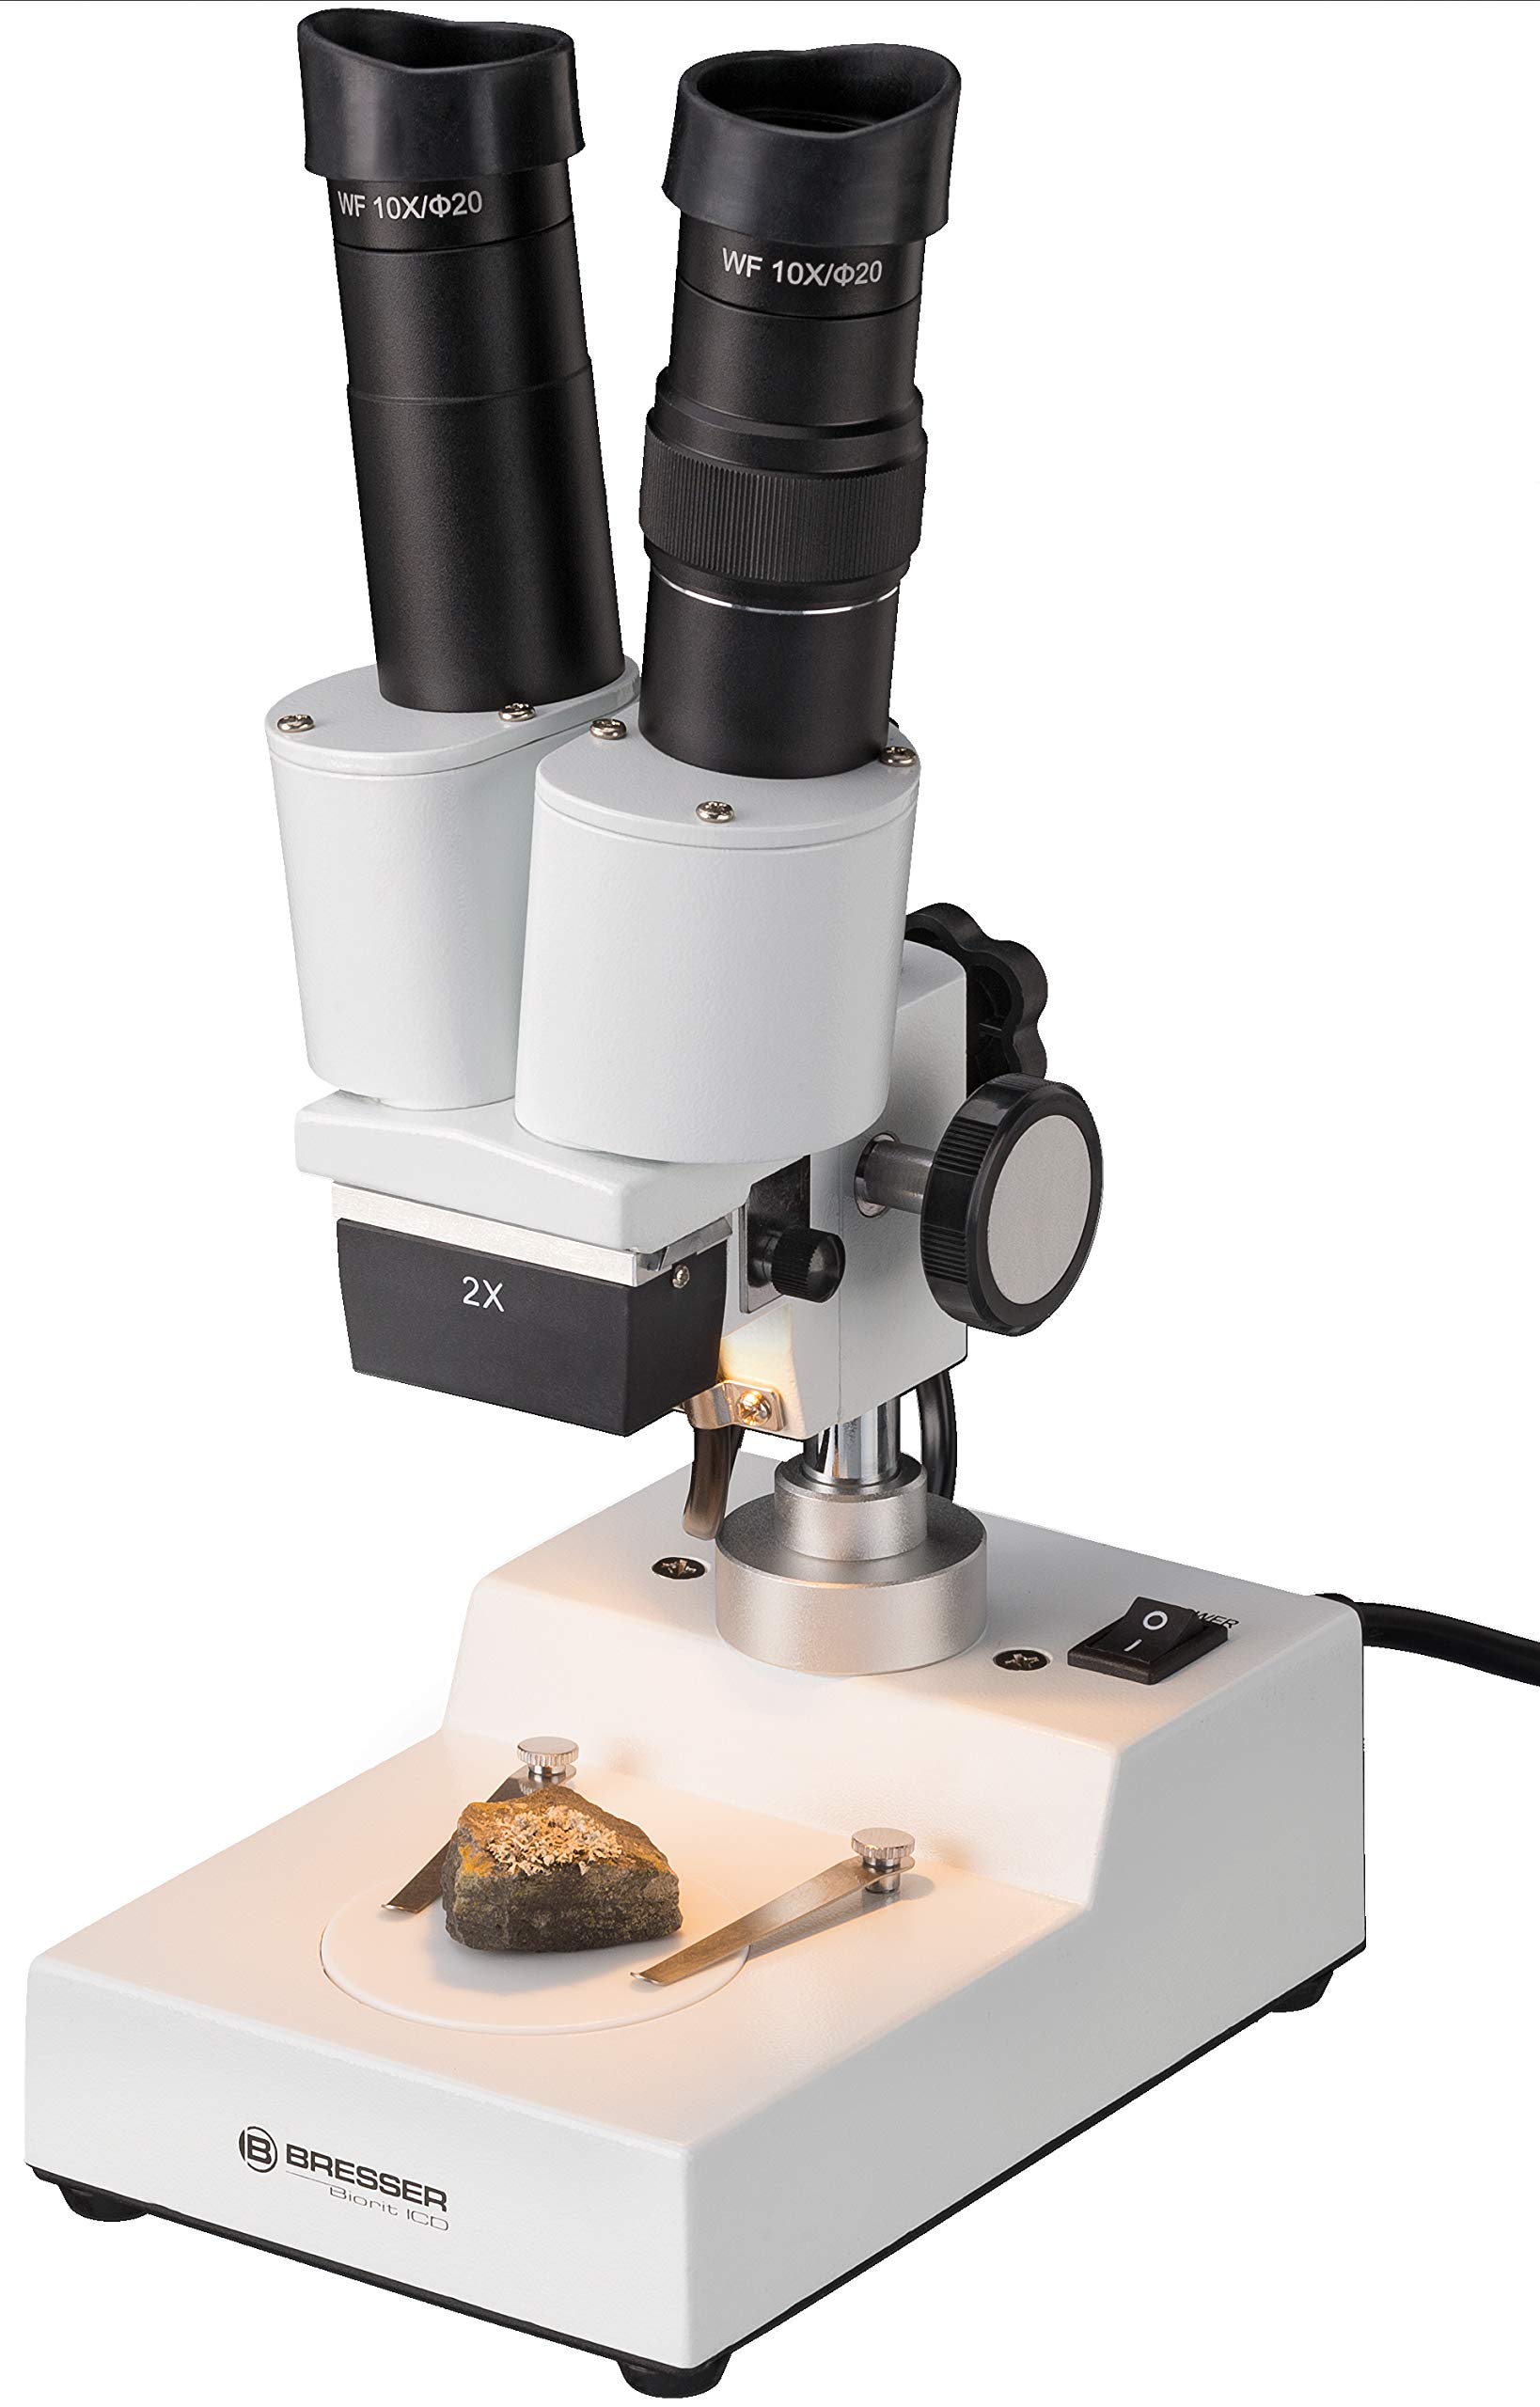 Bresser 3D Auflicht Stereo Mikroskop Biorit ICD 20x Vergrößerung zum Beobachtung von ‚Gesteinen, Pflanzen, Münzen, Insekten und vielem mehr inklusive Beleuchtung und Staubschutzhülle